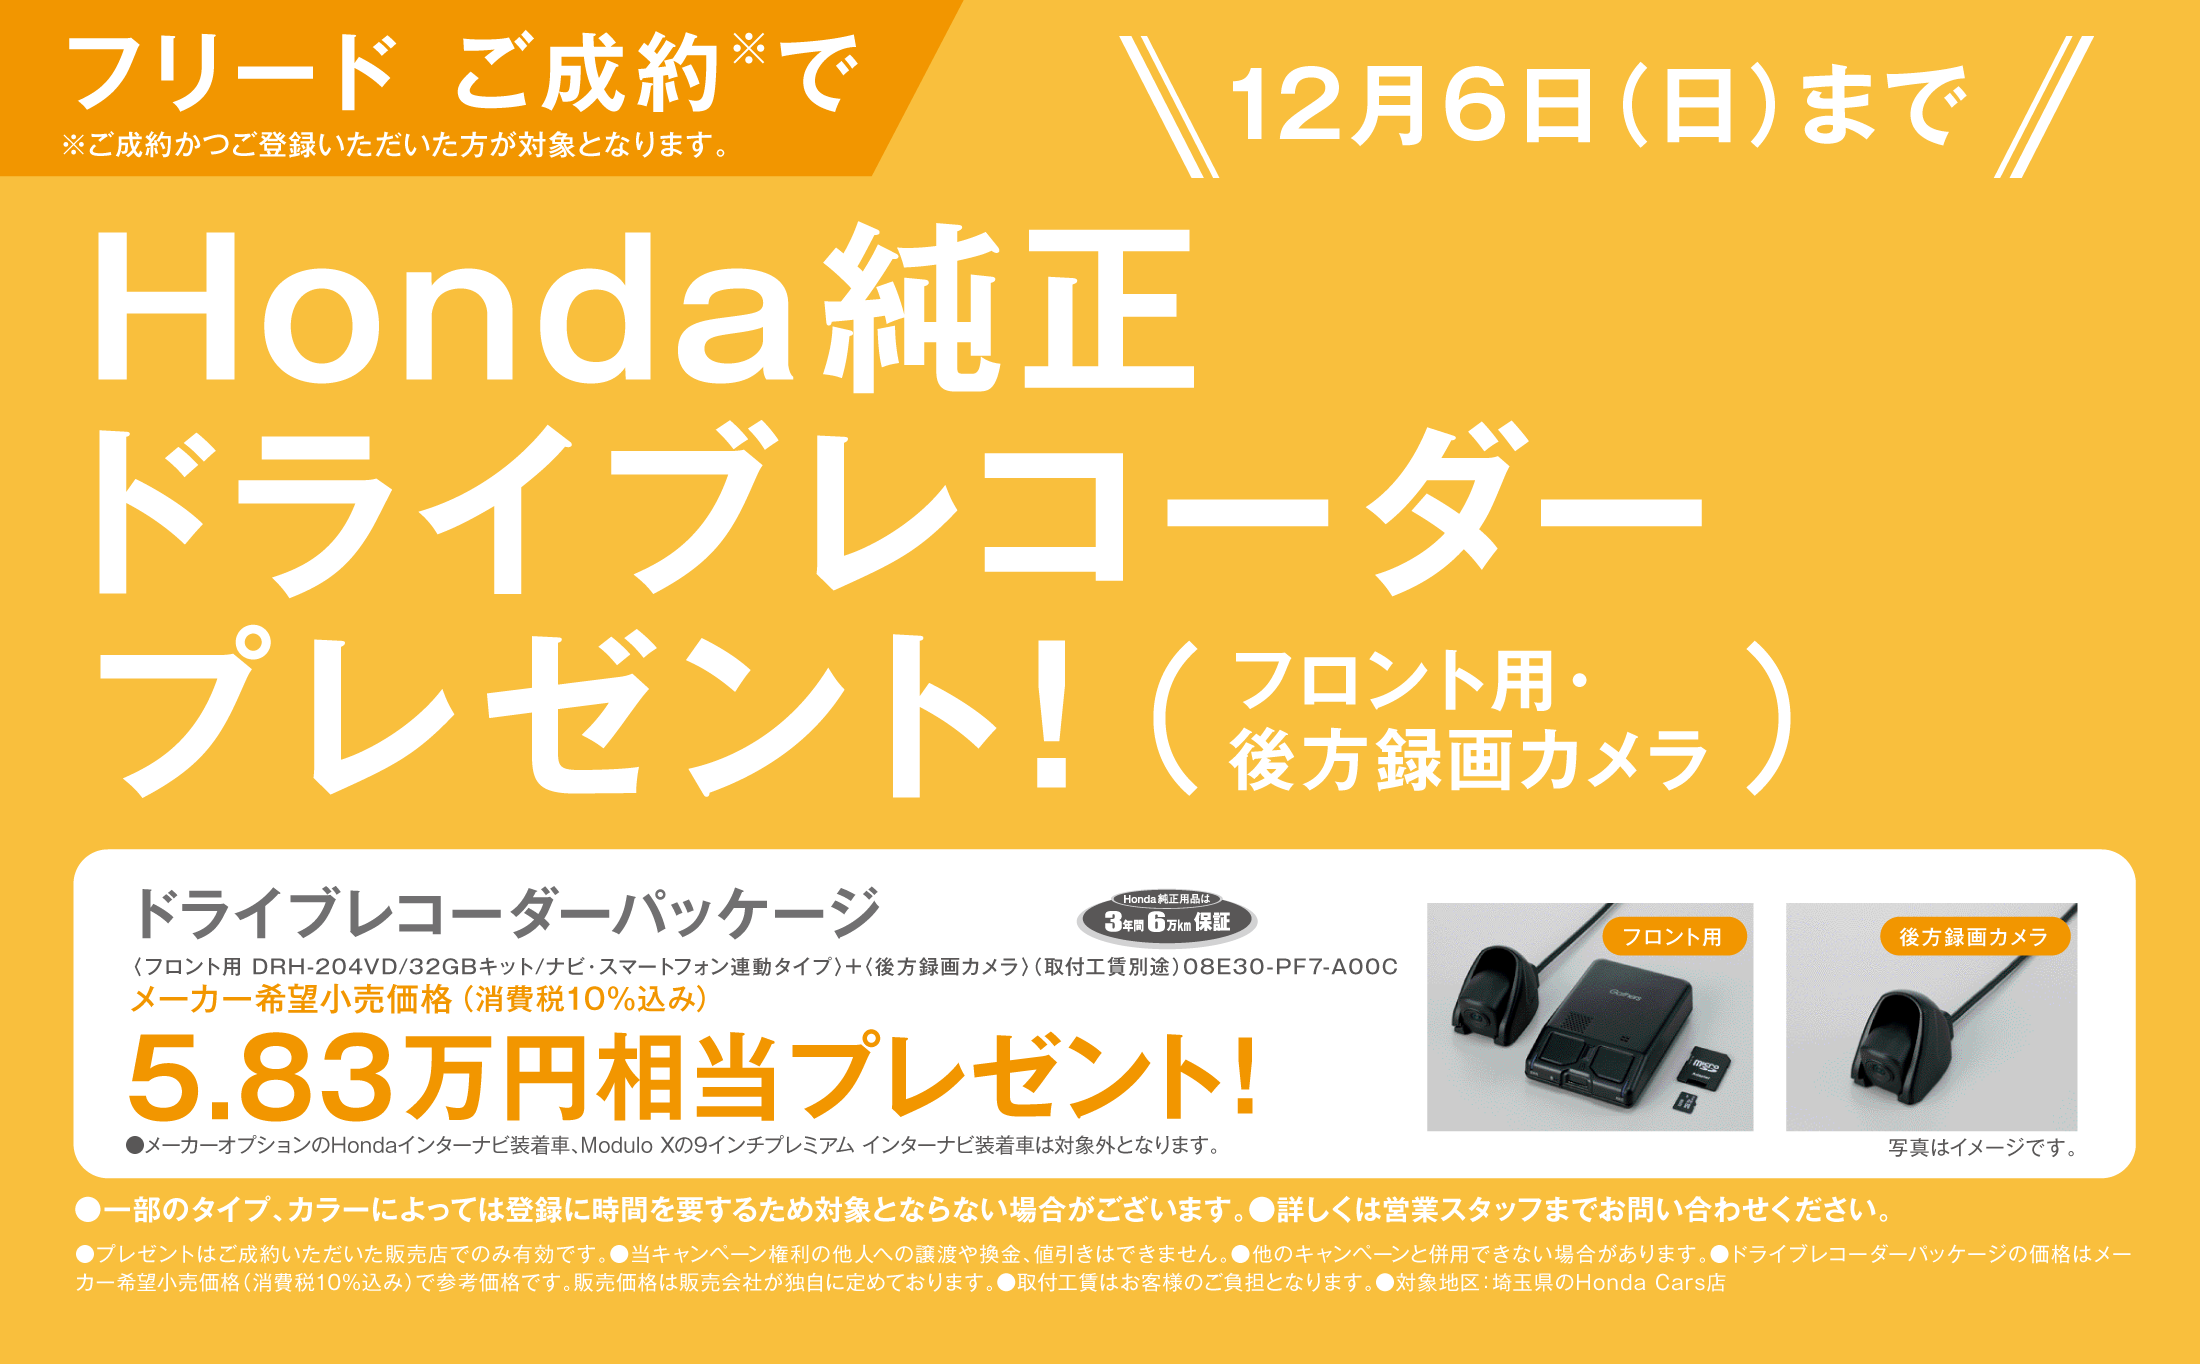 おトクなキャンペーン 埼玉県honda Cars総合サイト